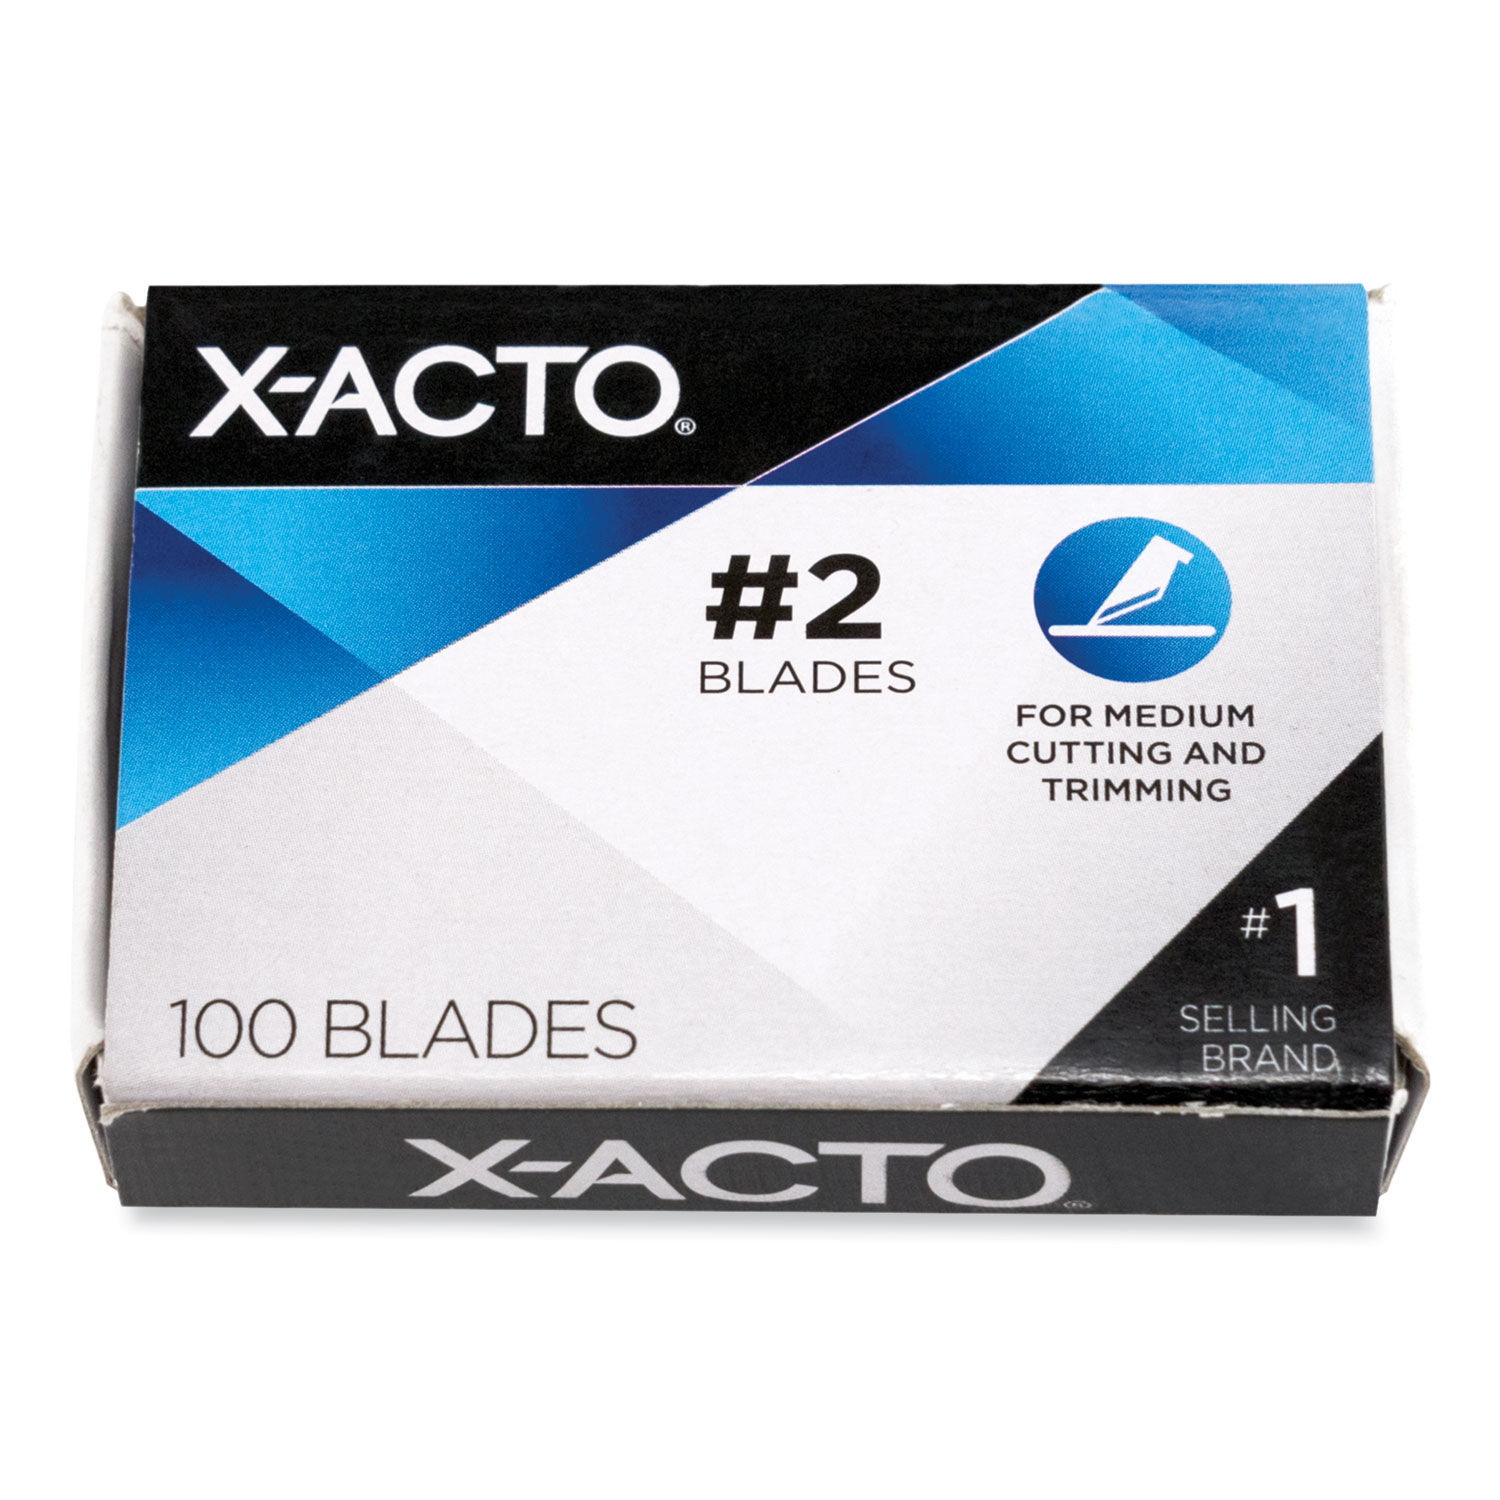 Xacto blades, 100 each